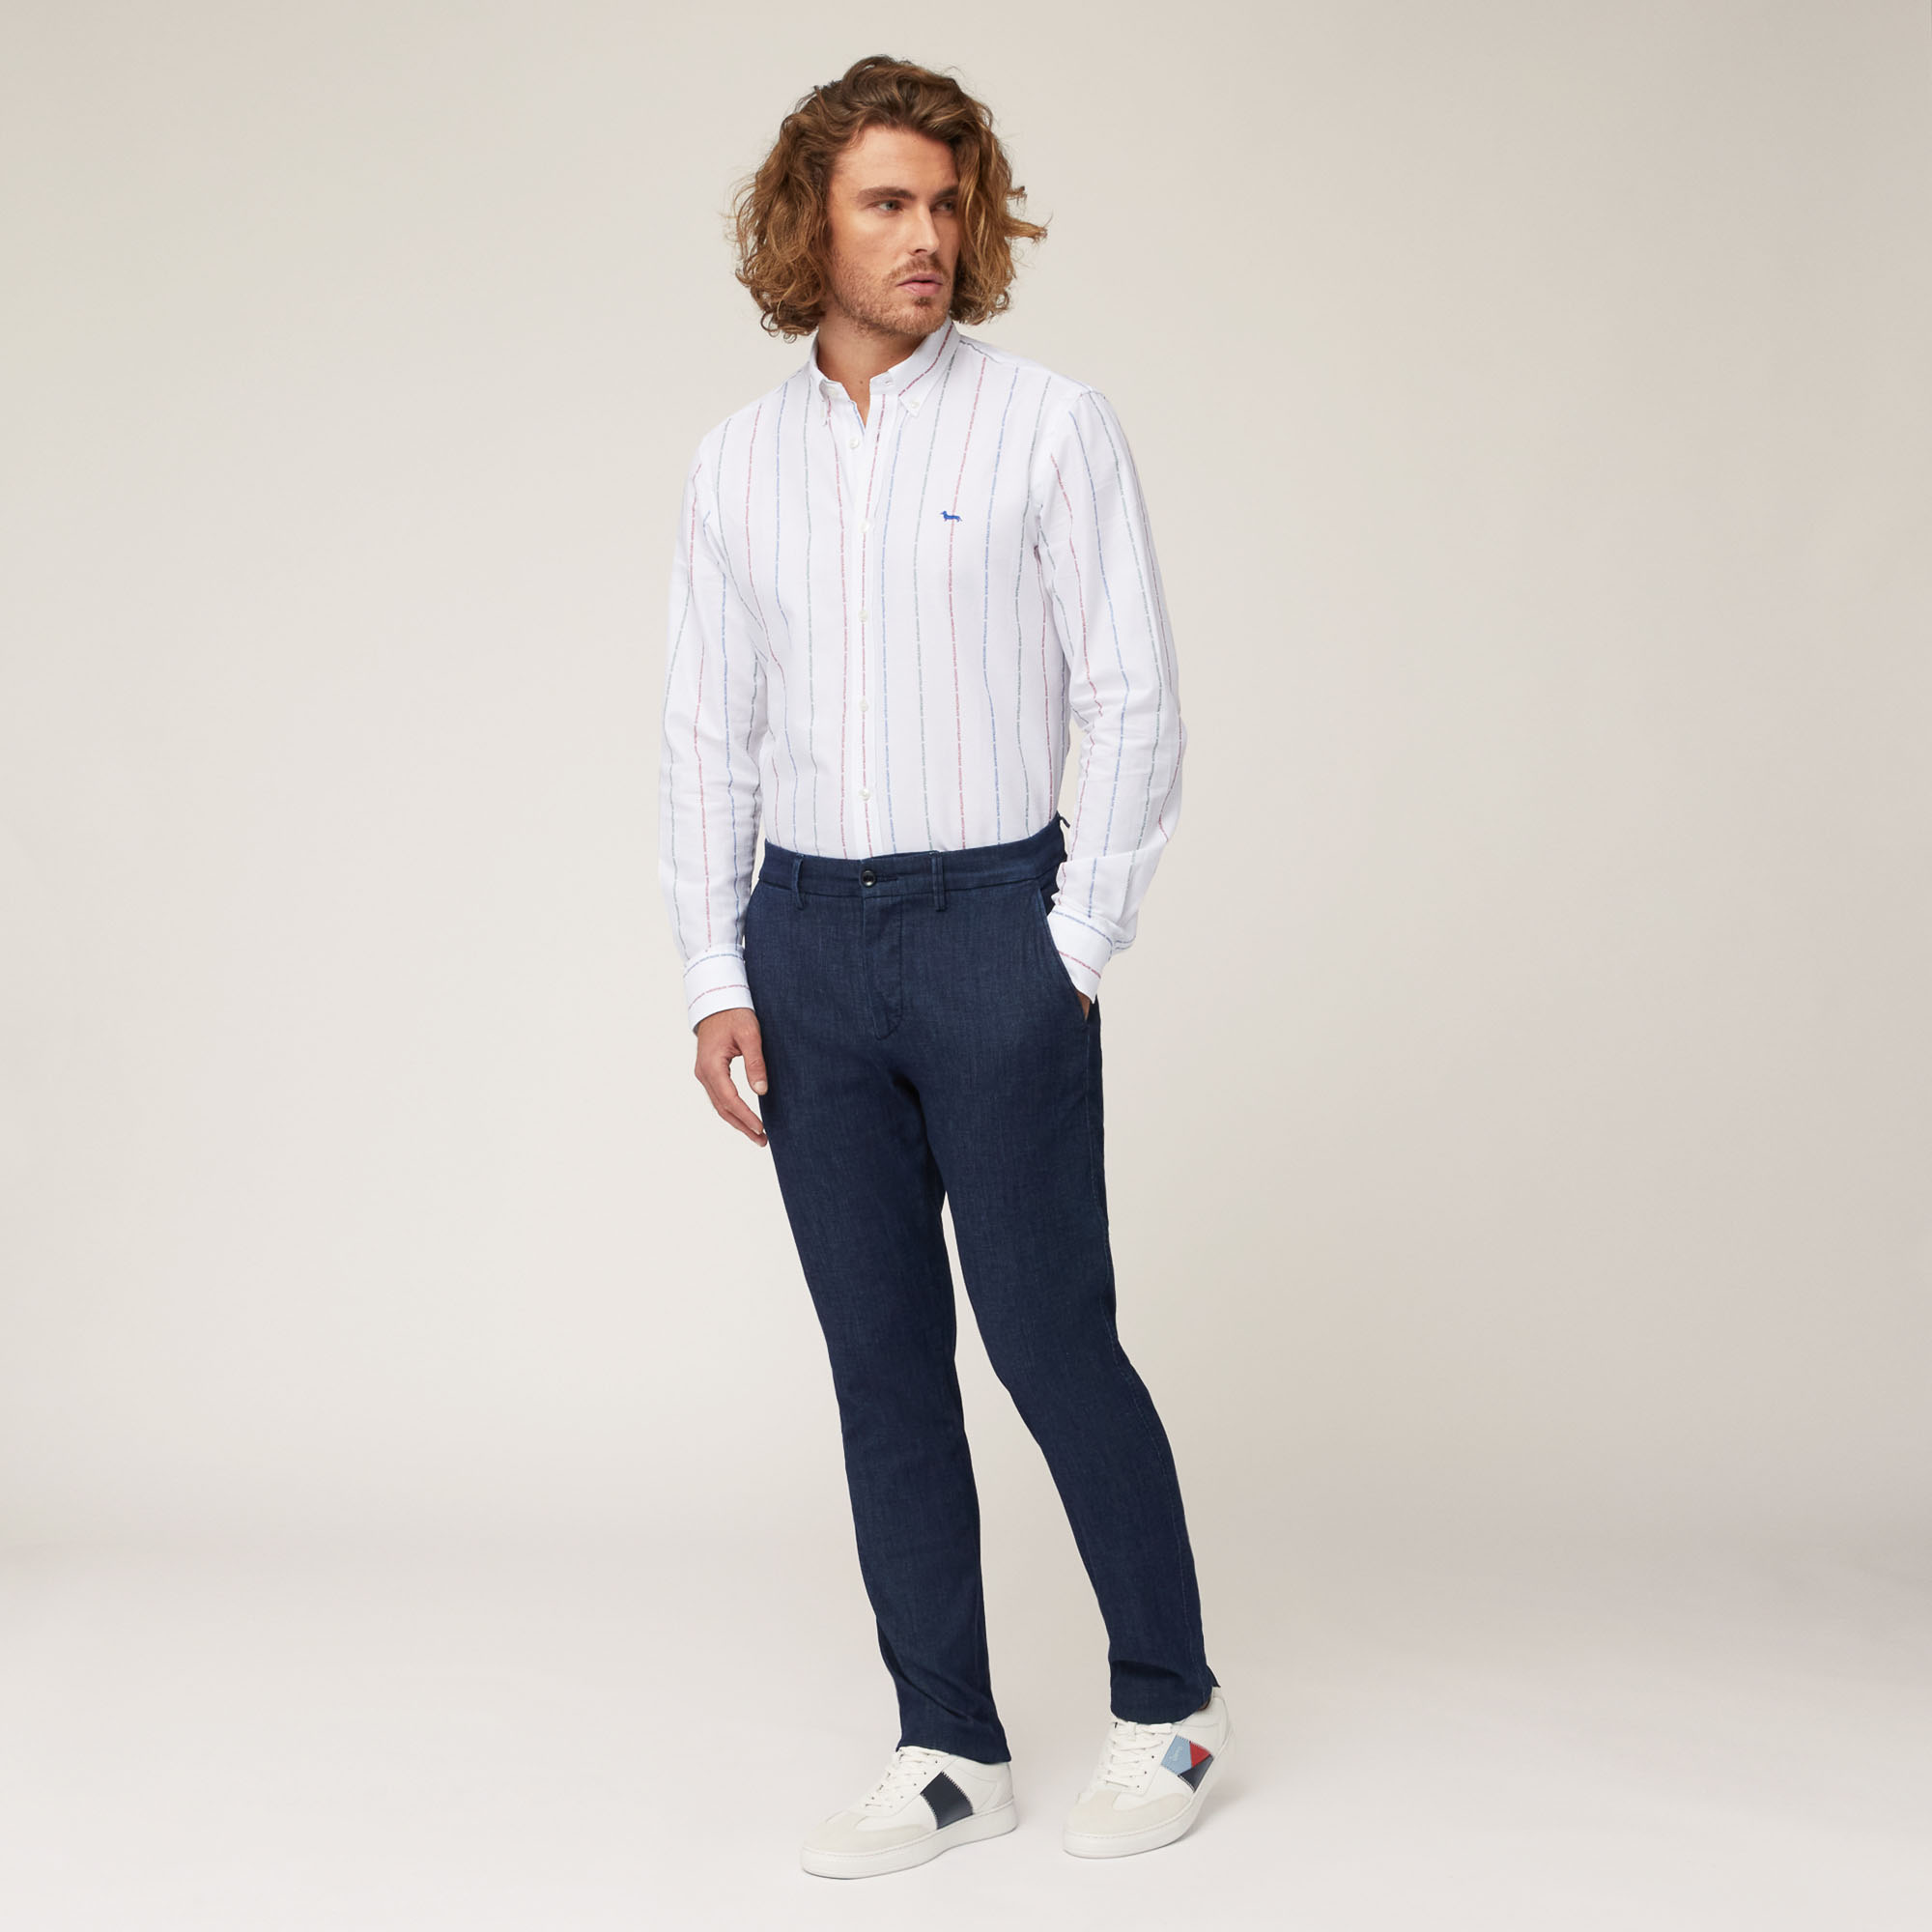 Pantaloni Chino Narrow Fit, Blu Denim, large image number 3